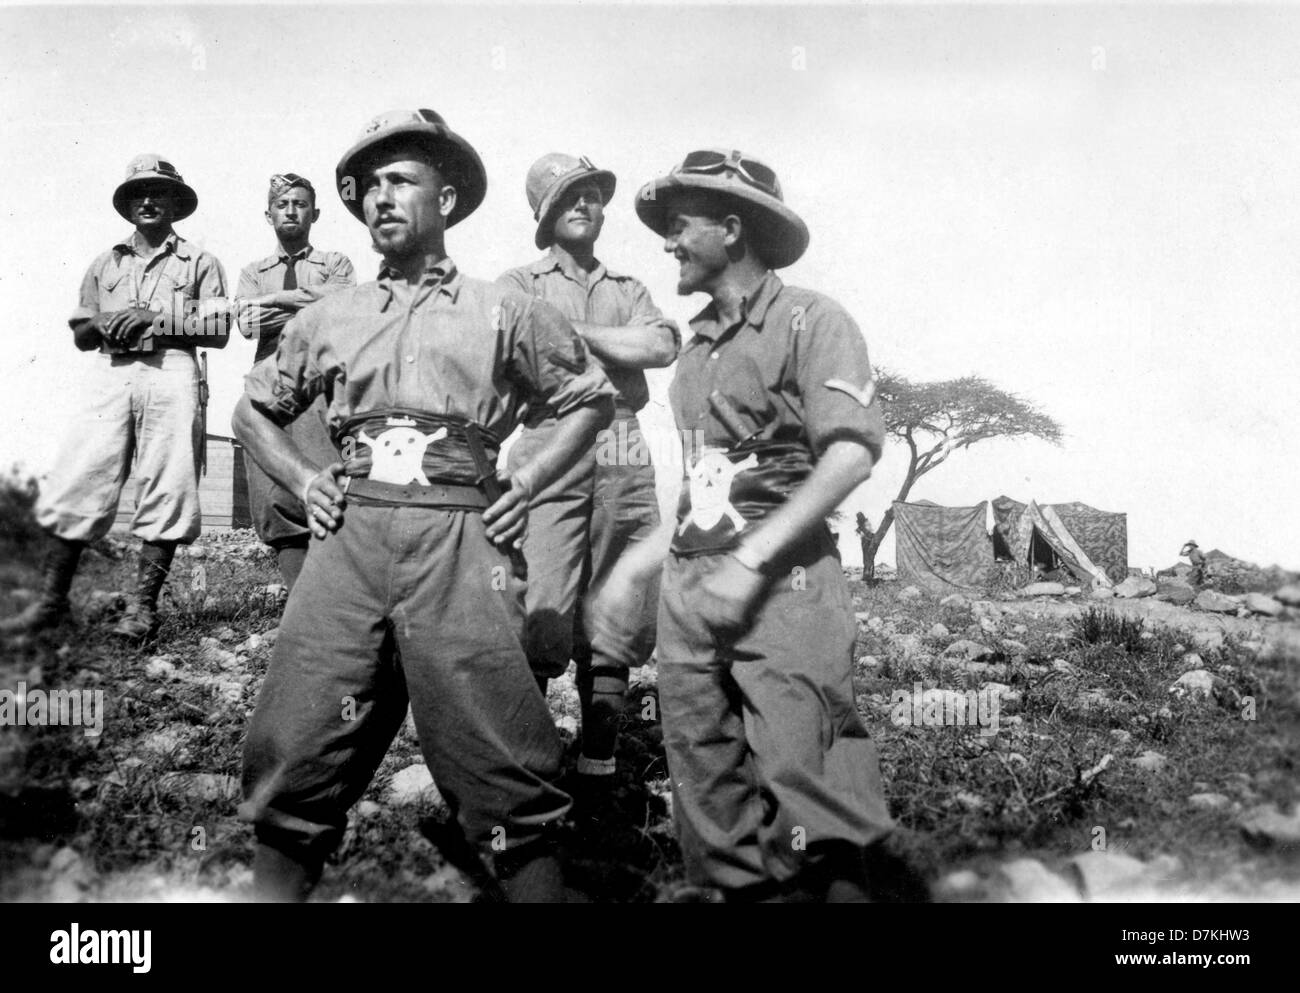 Pith-helmeted Soldaten der italienischen Wüstenarmee in Ägypten während des Zweiten Weltkrieges. Zweiter Weltkrieg 2 Soldaten Truppen Nahost Nordafrika Kampagne Stockfoto